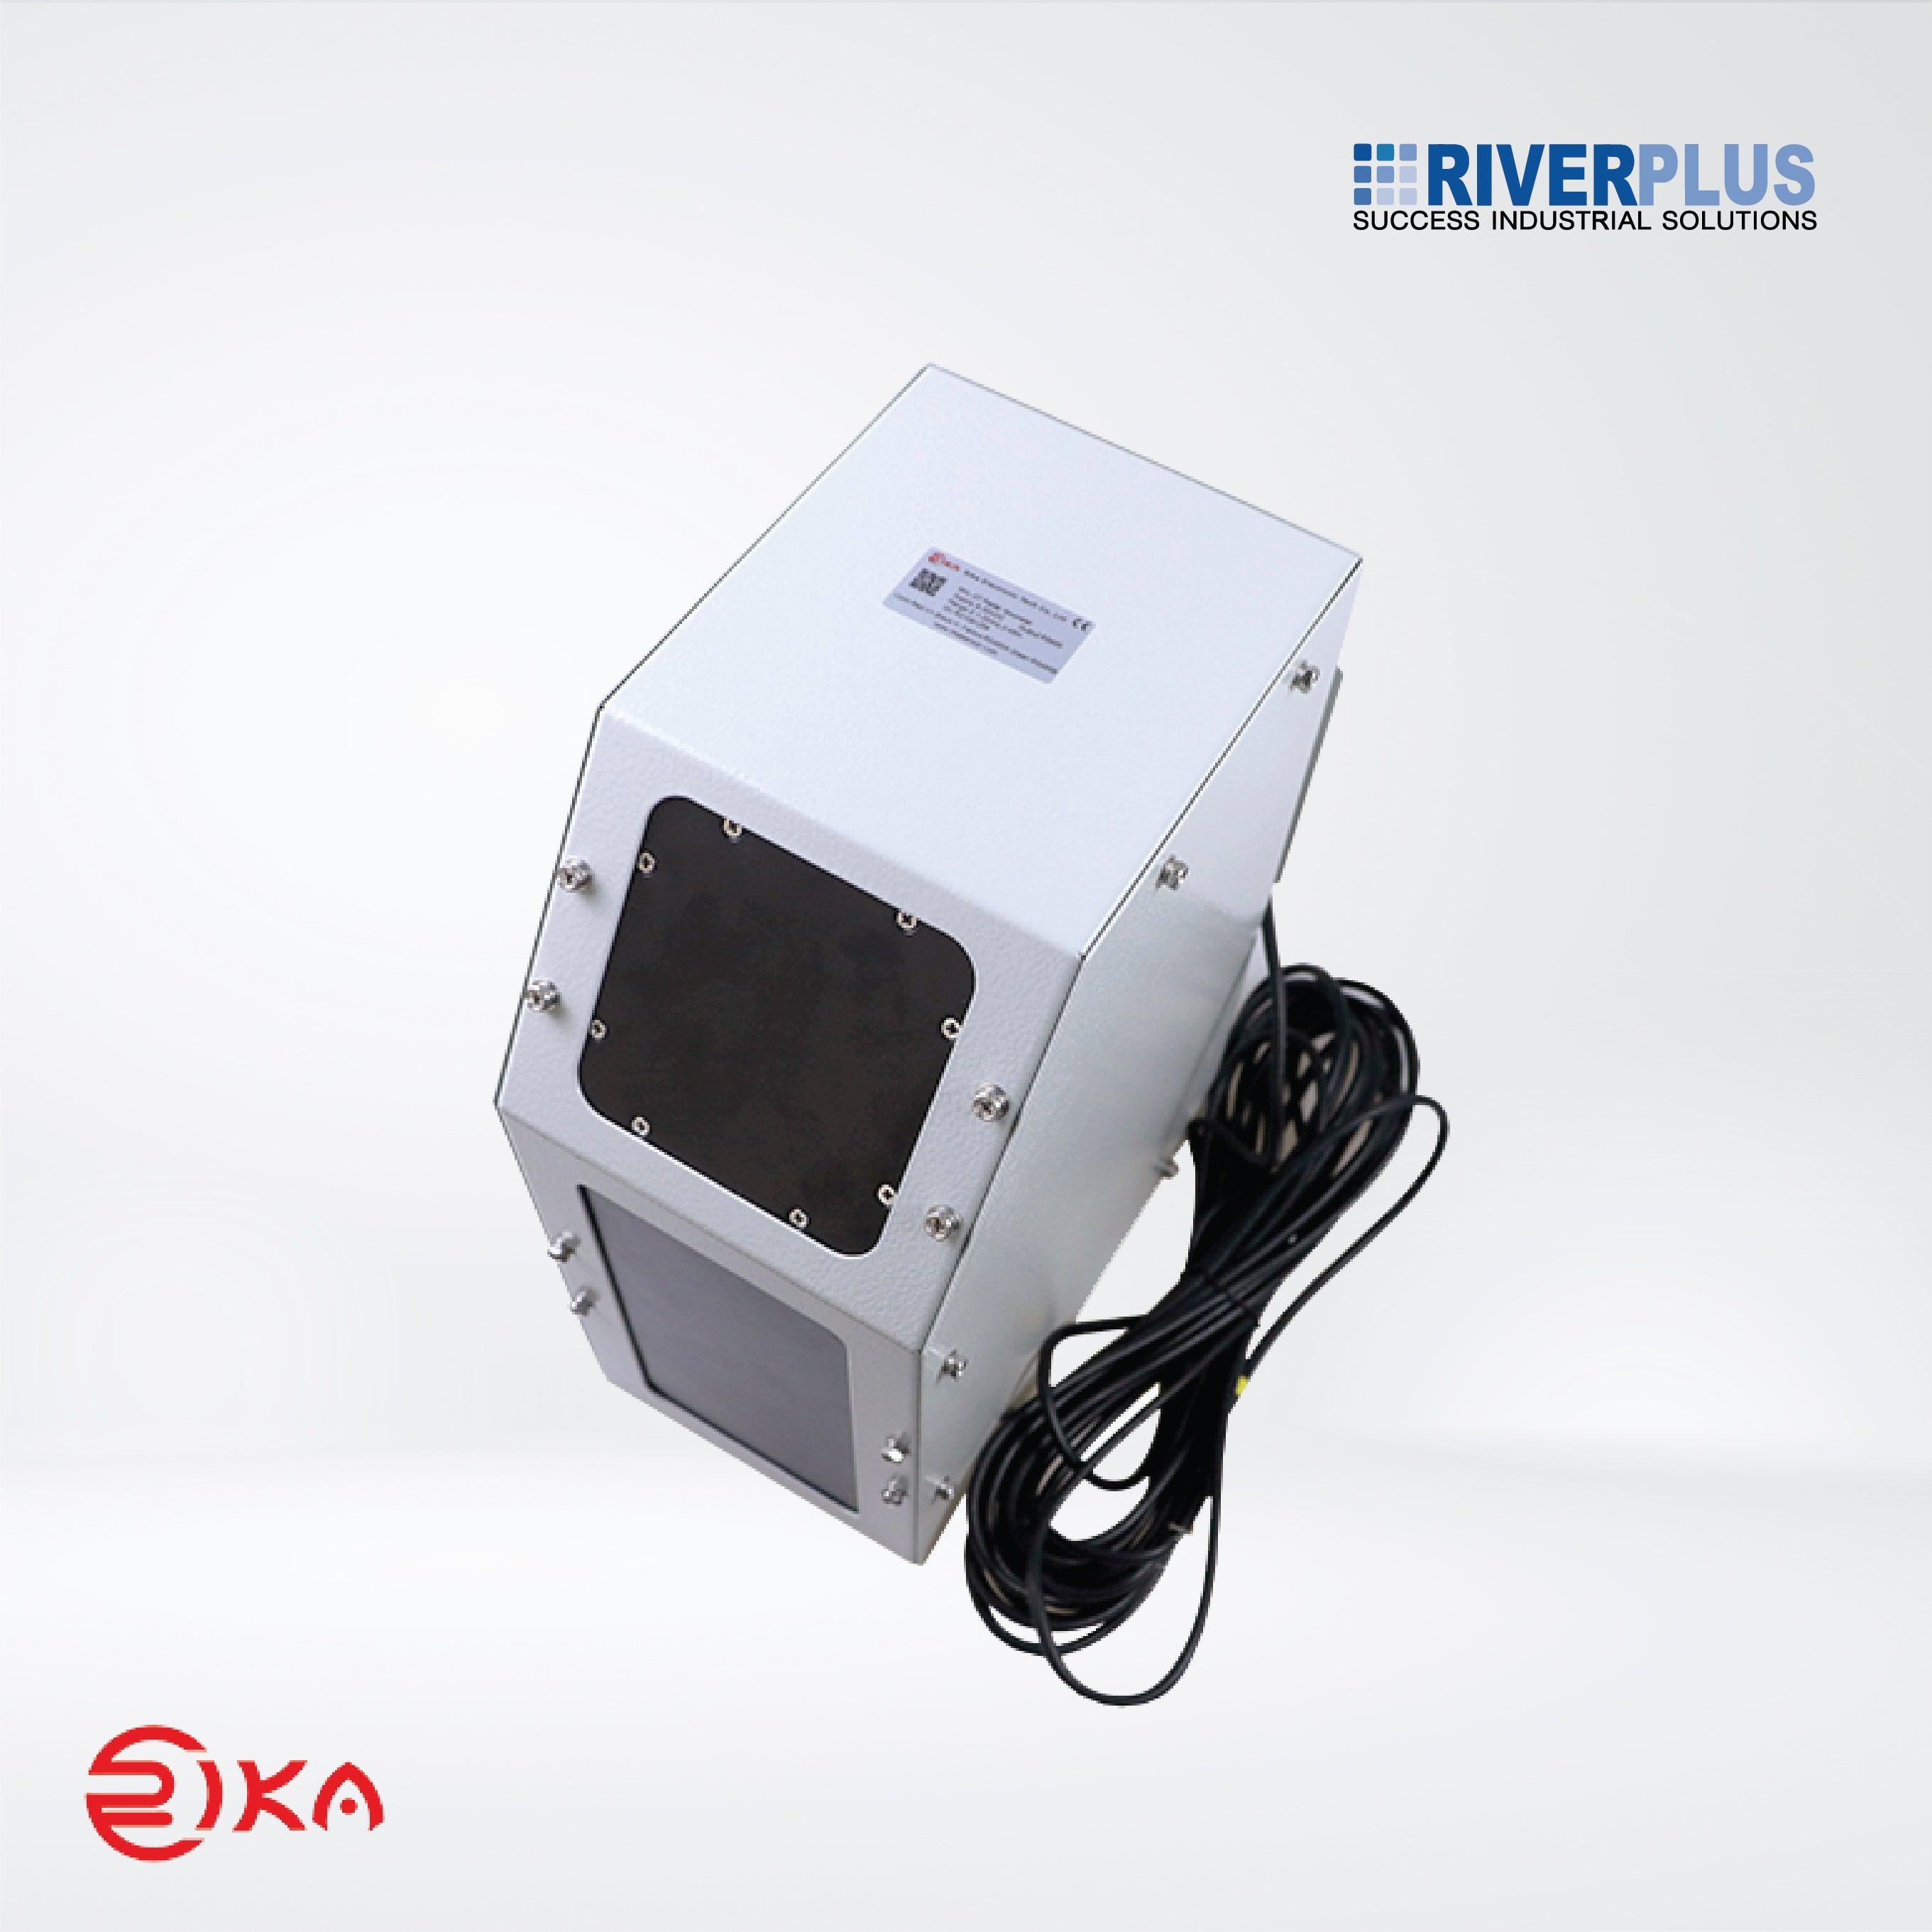 RKL-07 Radar Flowmeter - Riverplus